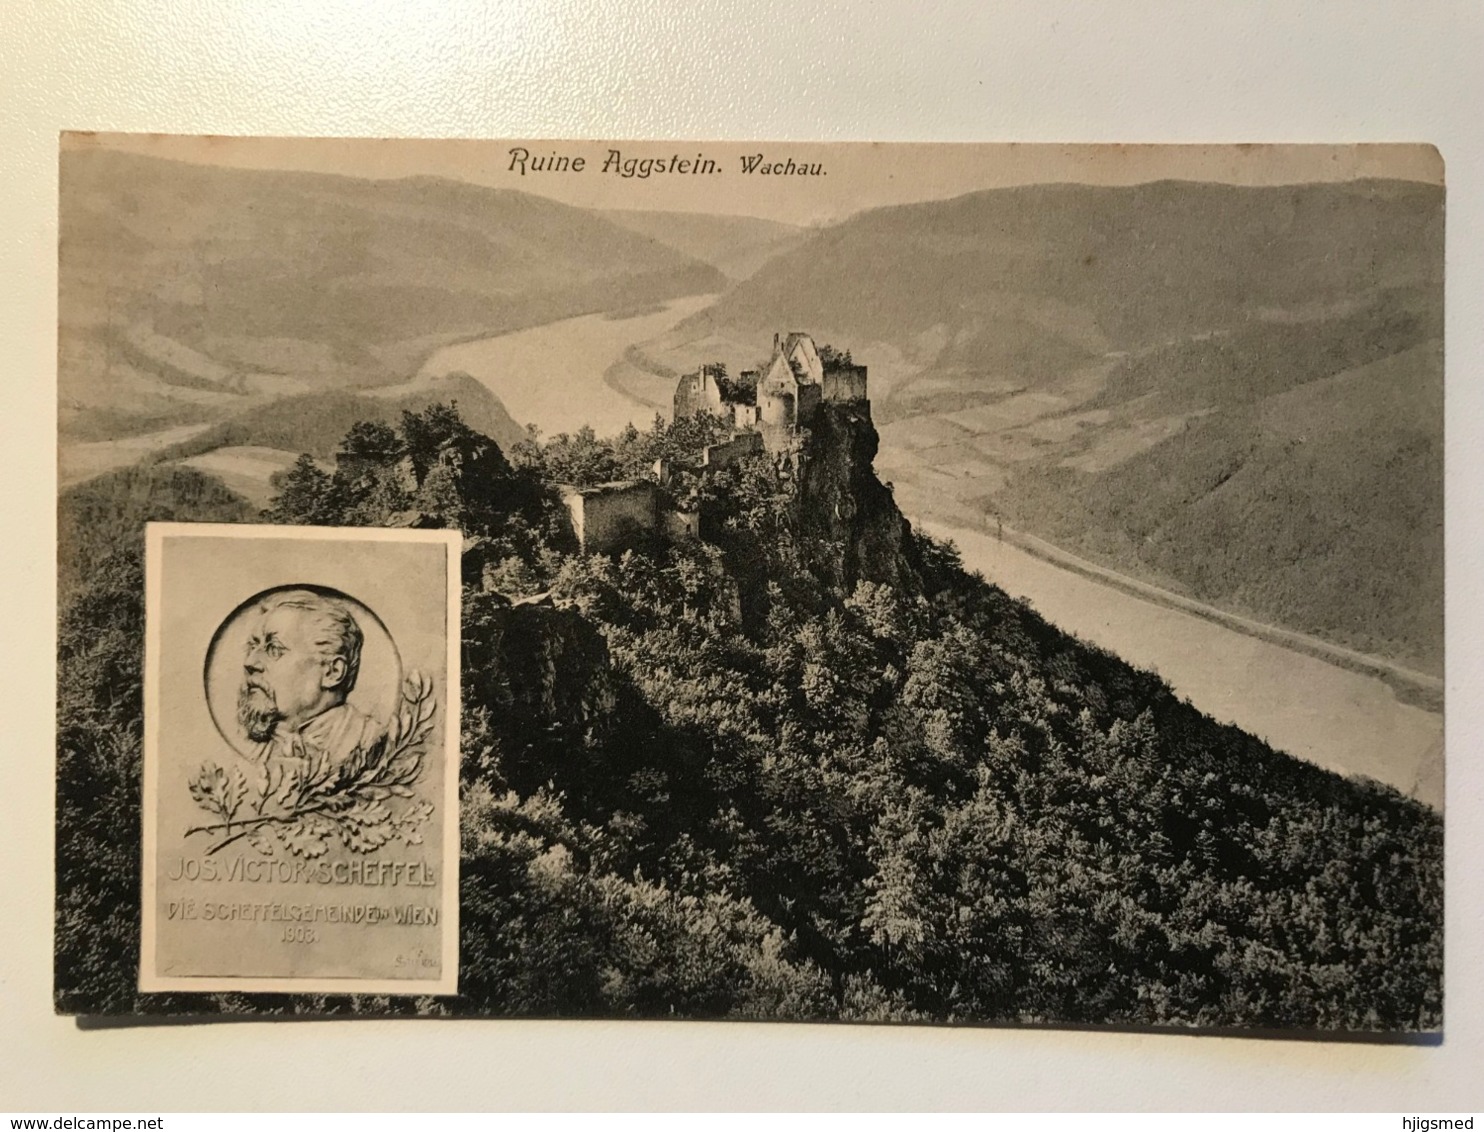 Austria Österreich Wachau Ruine Aggstein Ruins Josef Victor Scheffel Wien 11679 Post Card Postkarte POSTCARD - Wachau